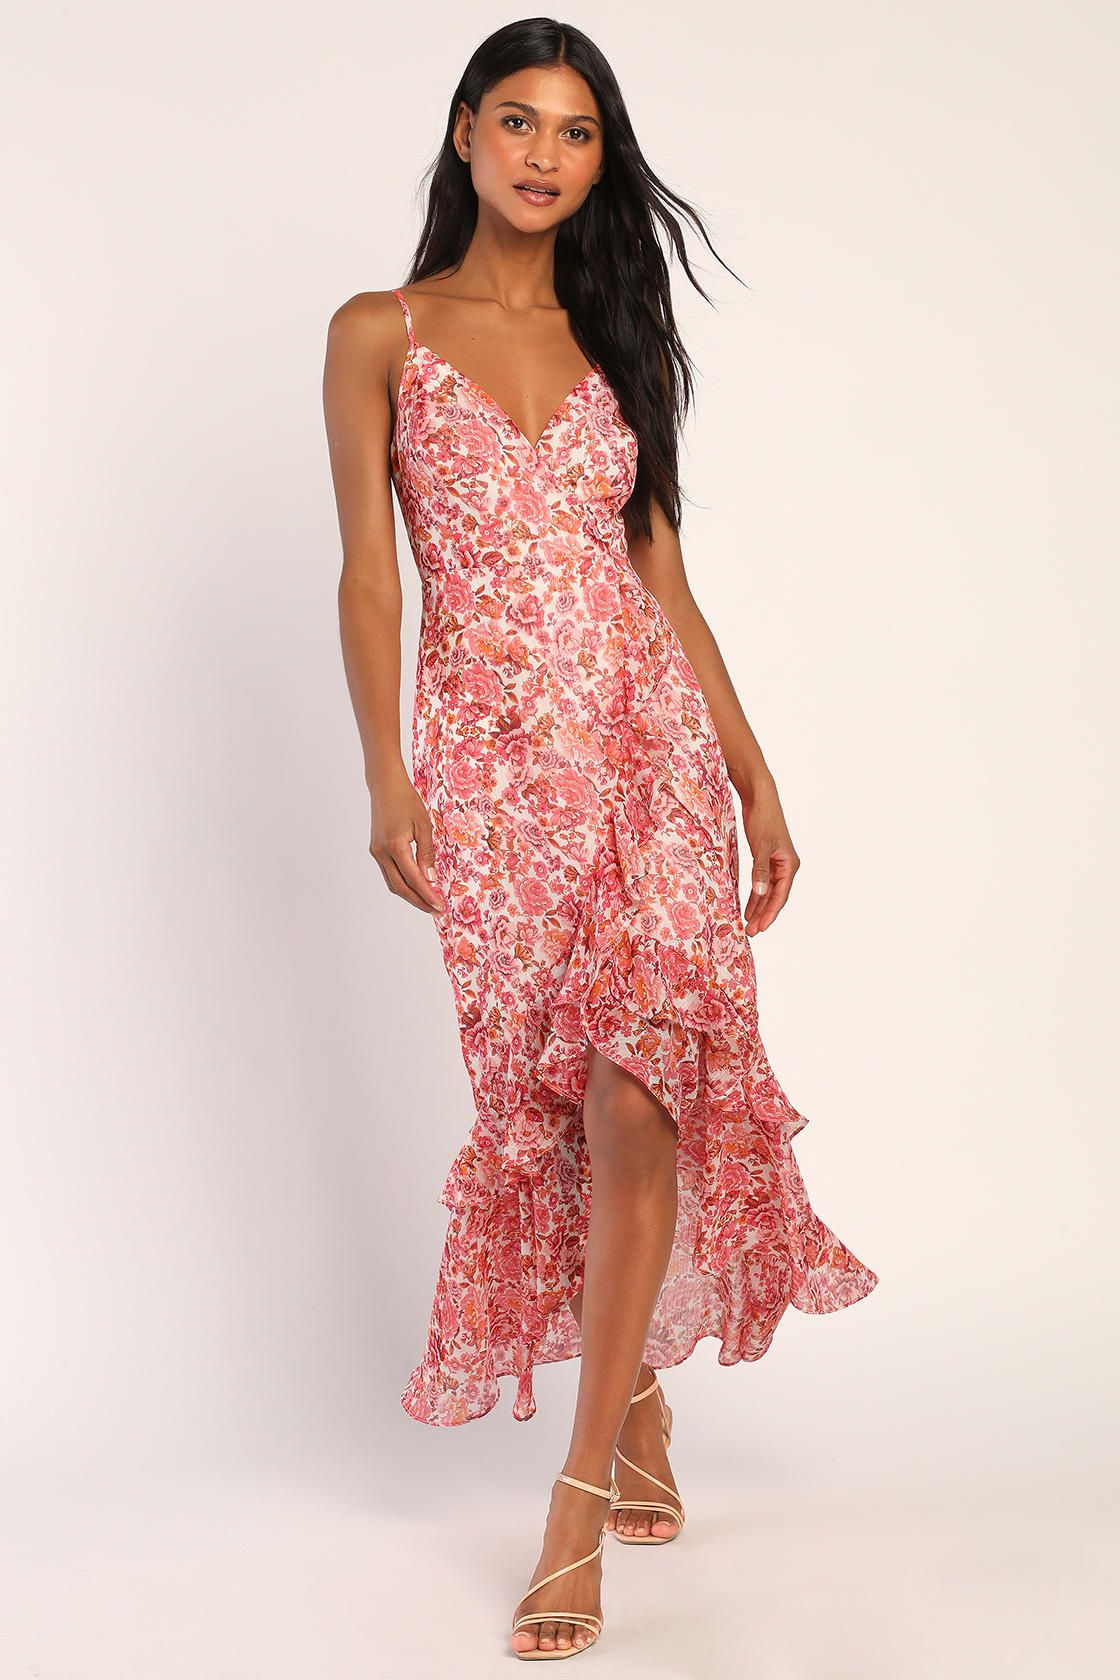 Always Enchanting Pink Floral Metallic Ruffled High-Low Dress | Lulus